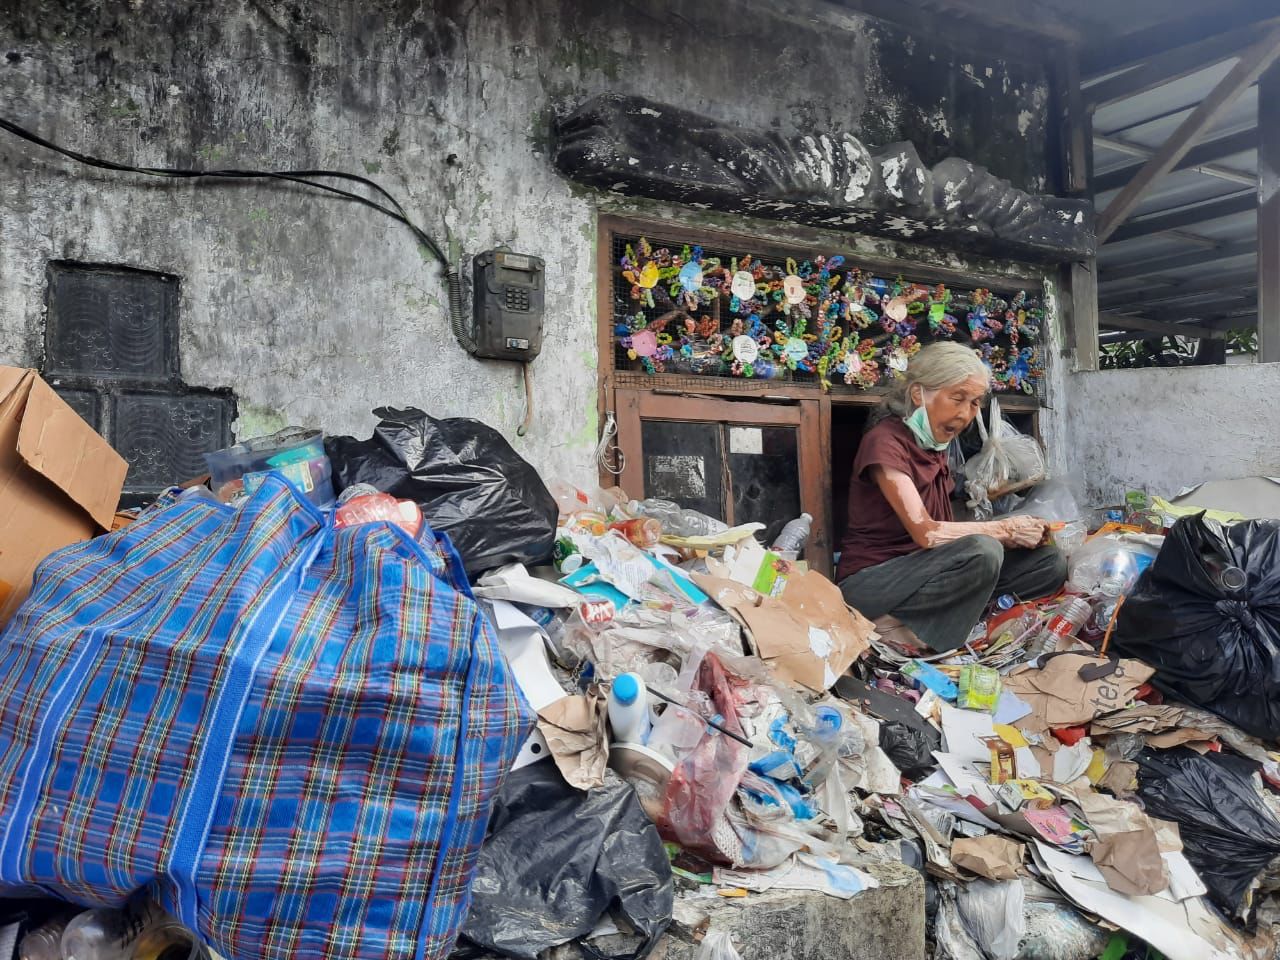 Nenek 75 Tahun Bertahan Hidup di Atas Tumpukan Sampah, Setiap Hari Diberi Makan Sang Adik